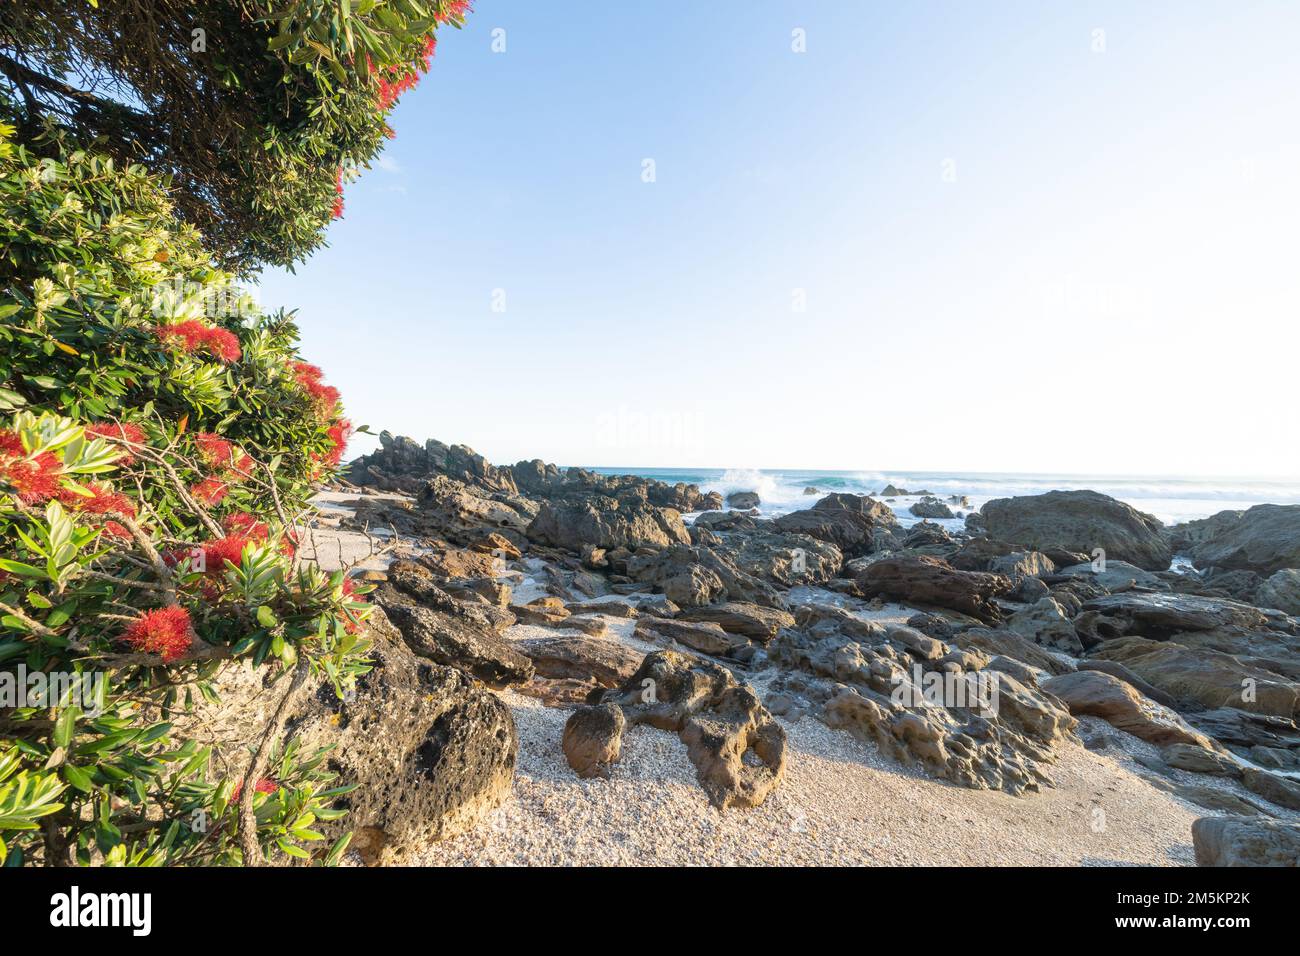 Vista del paisaje del monte Maunganui a través de la costa rocosa hasta el mar y el horizonte y el árbol de pohutukawa con flor roja brillante al amanecer en Tauranga Nueva Zelanda Foto de stock